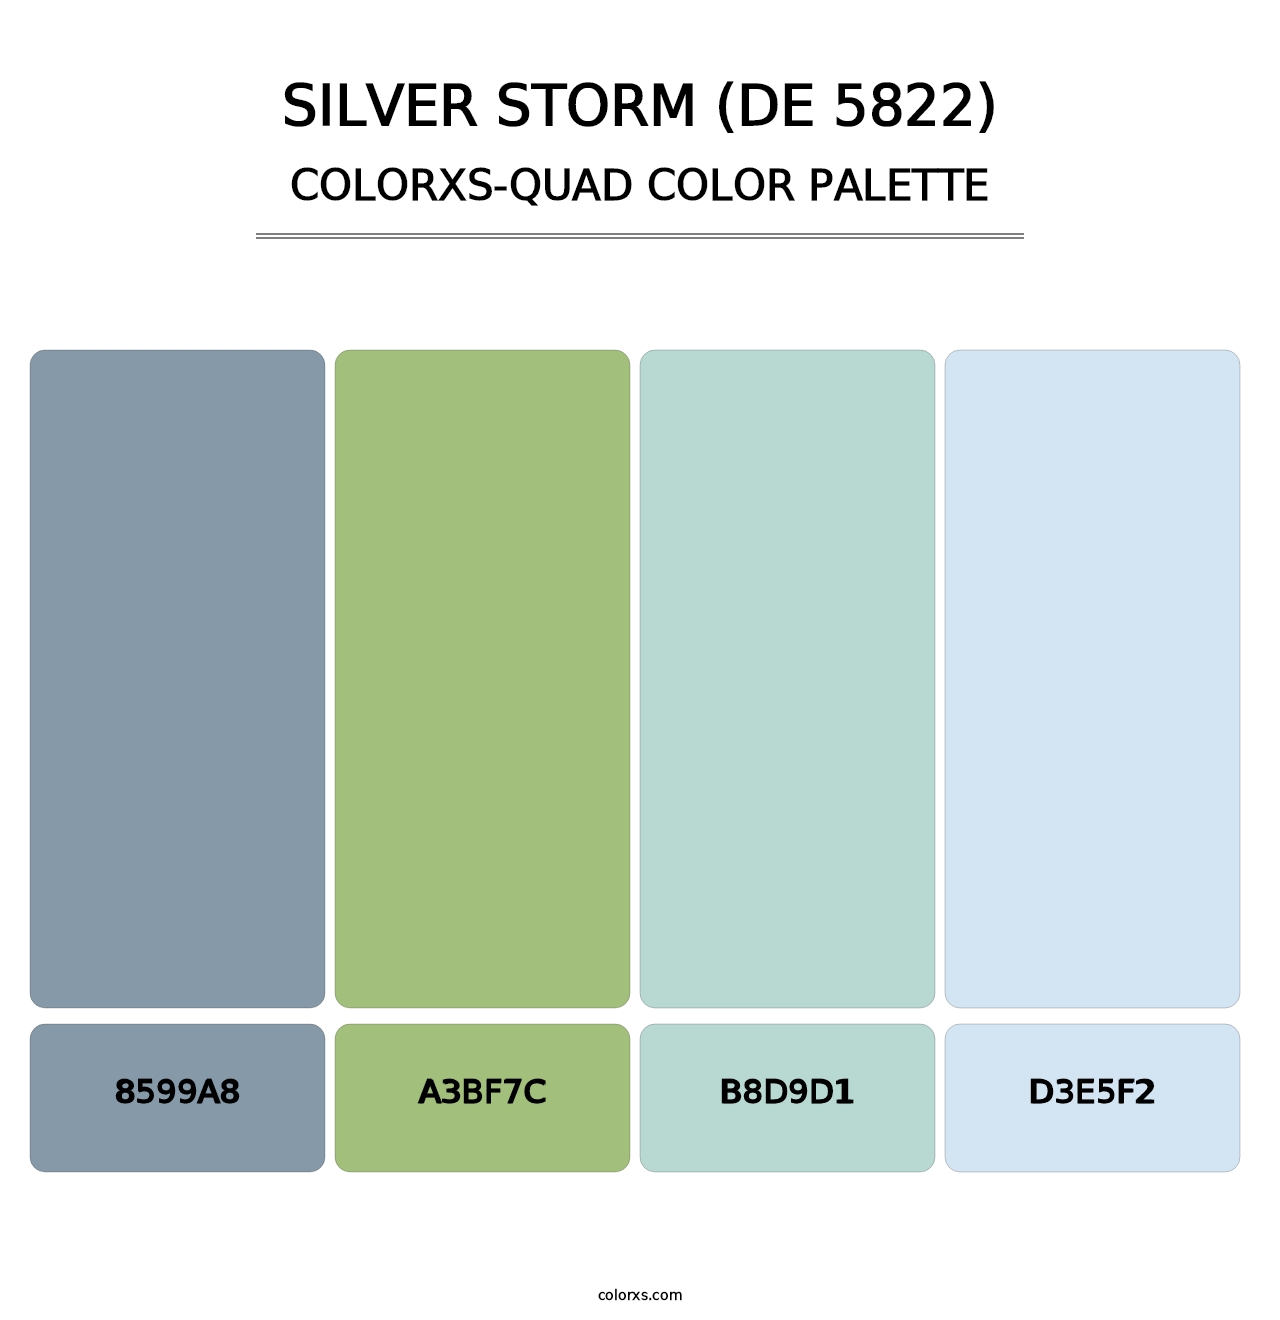 Silver Storm (DE 5822) - Colorxs Quad Palette